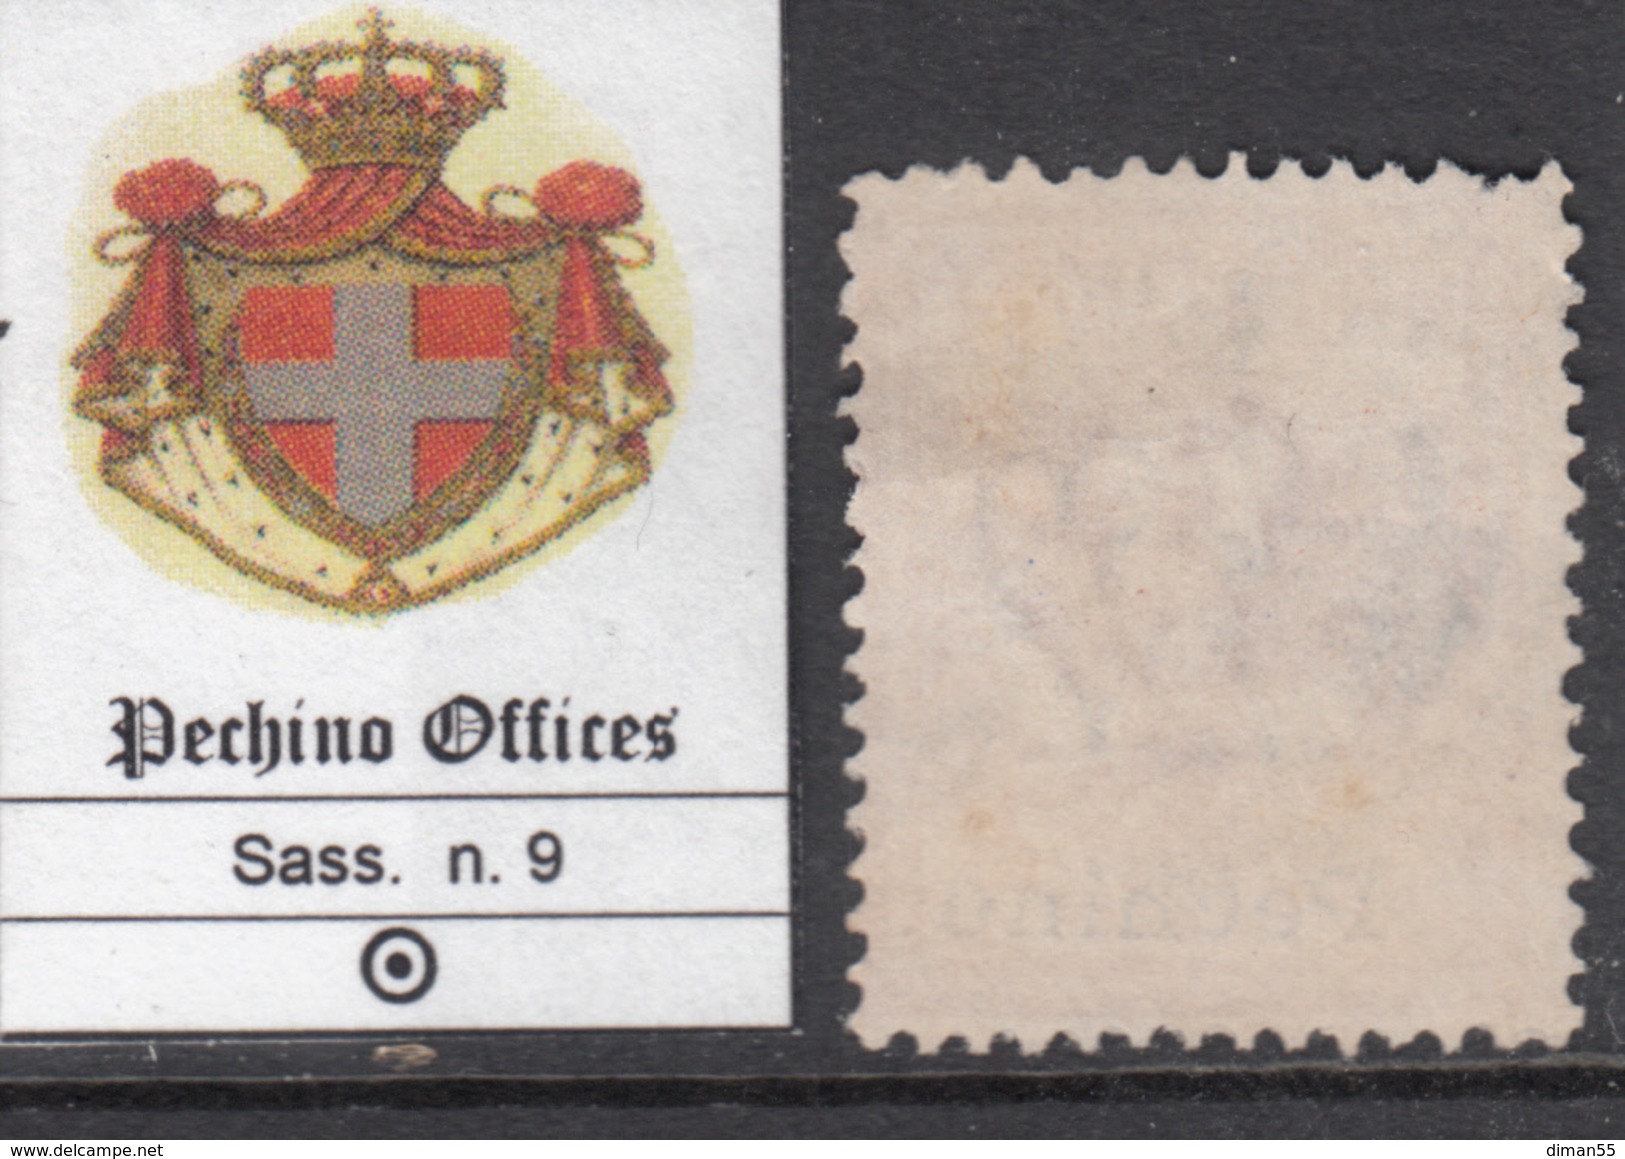 ITALIA - CHINA OFFICES - PECHINO - Sassone N.9 - Cat. 150 Euro - Usato - Gestempelt - Pekin